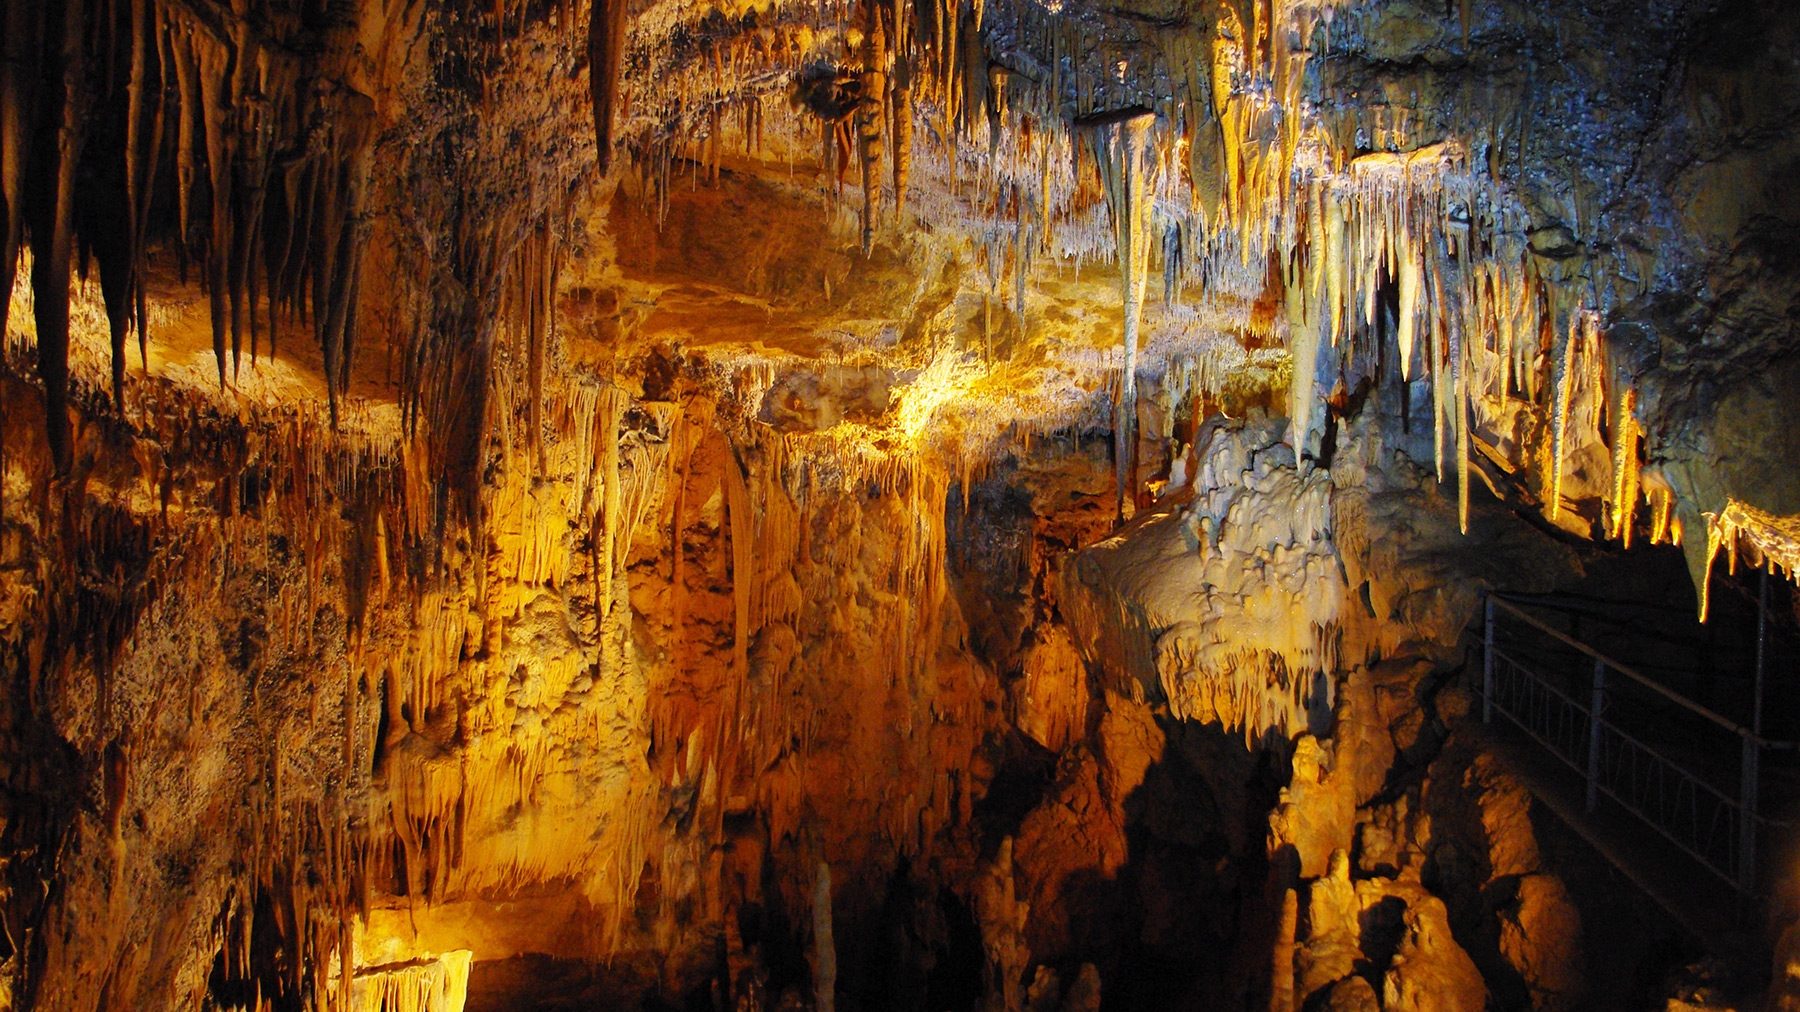 Grotta di Foissac